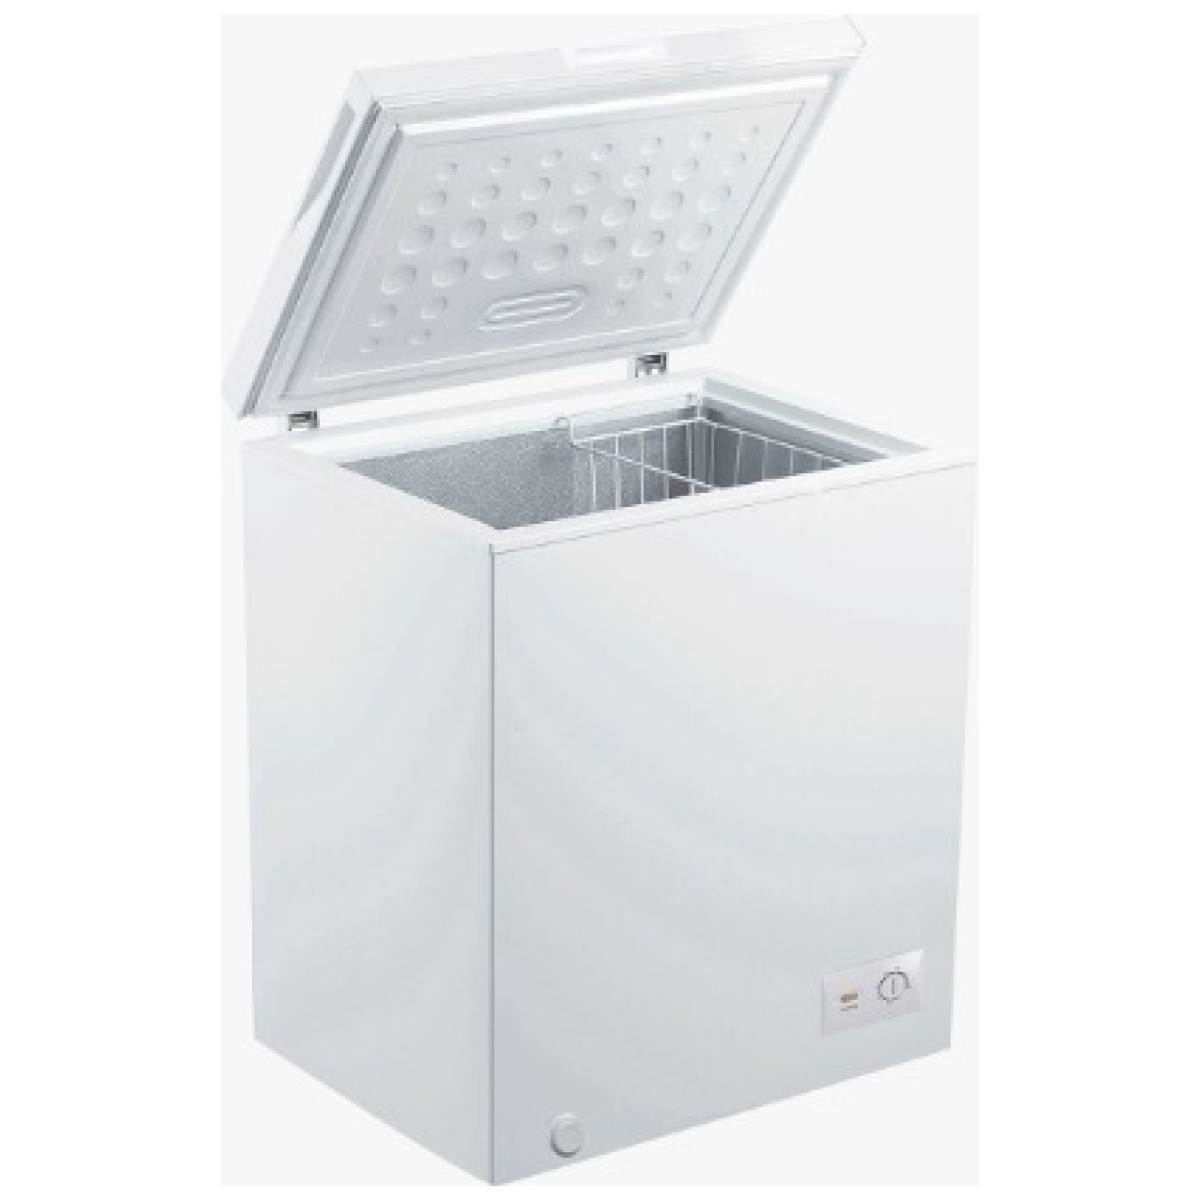 Thomson freezer THFZ-DD42 chest 380 | Freezer | Home Appliances